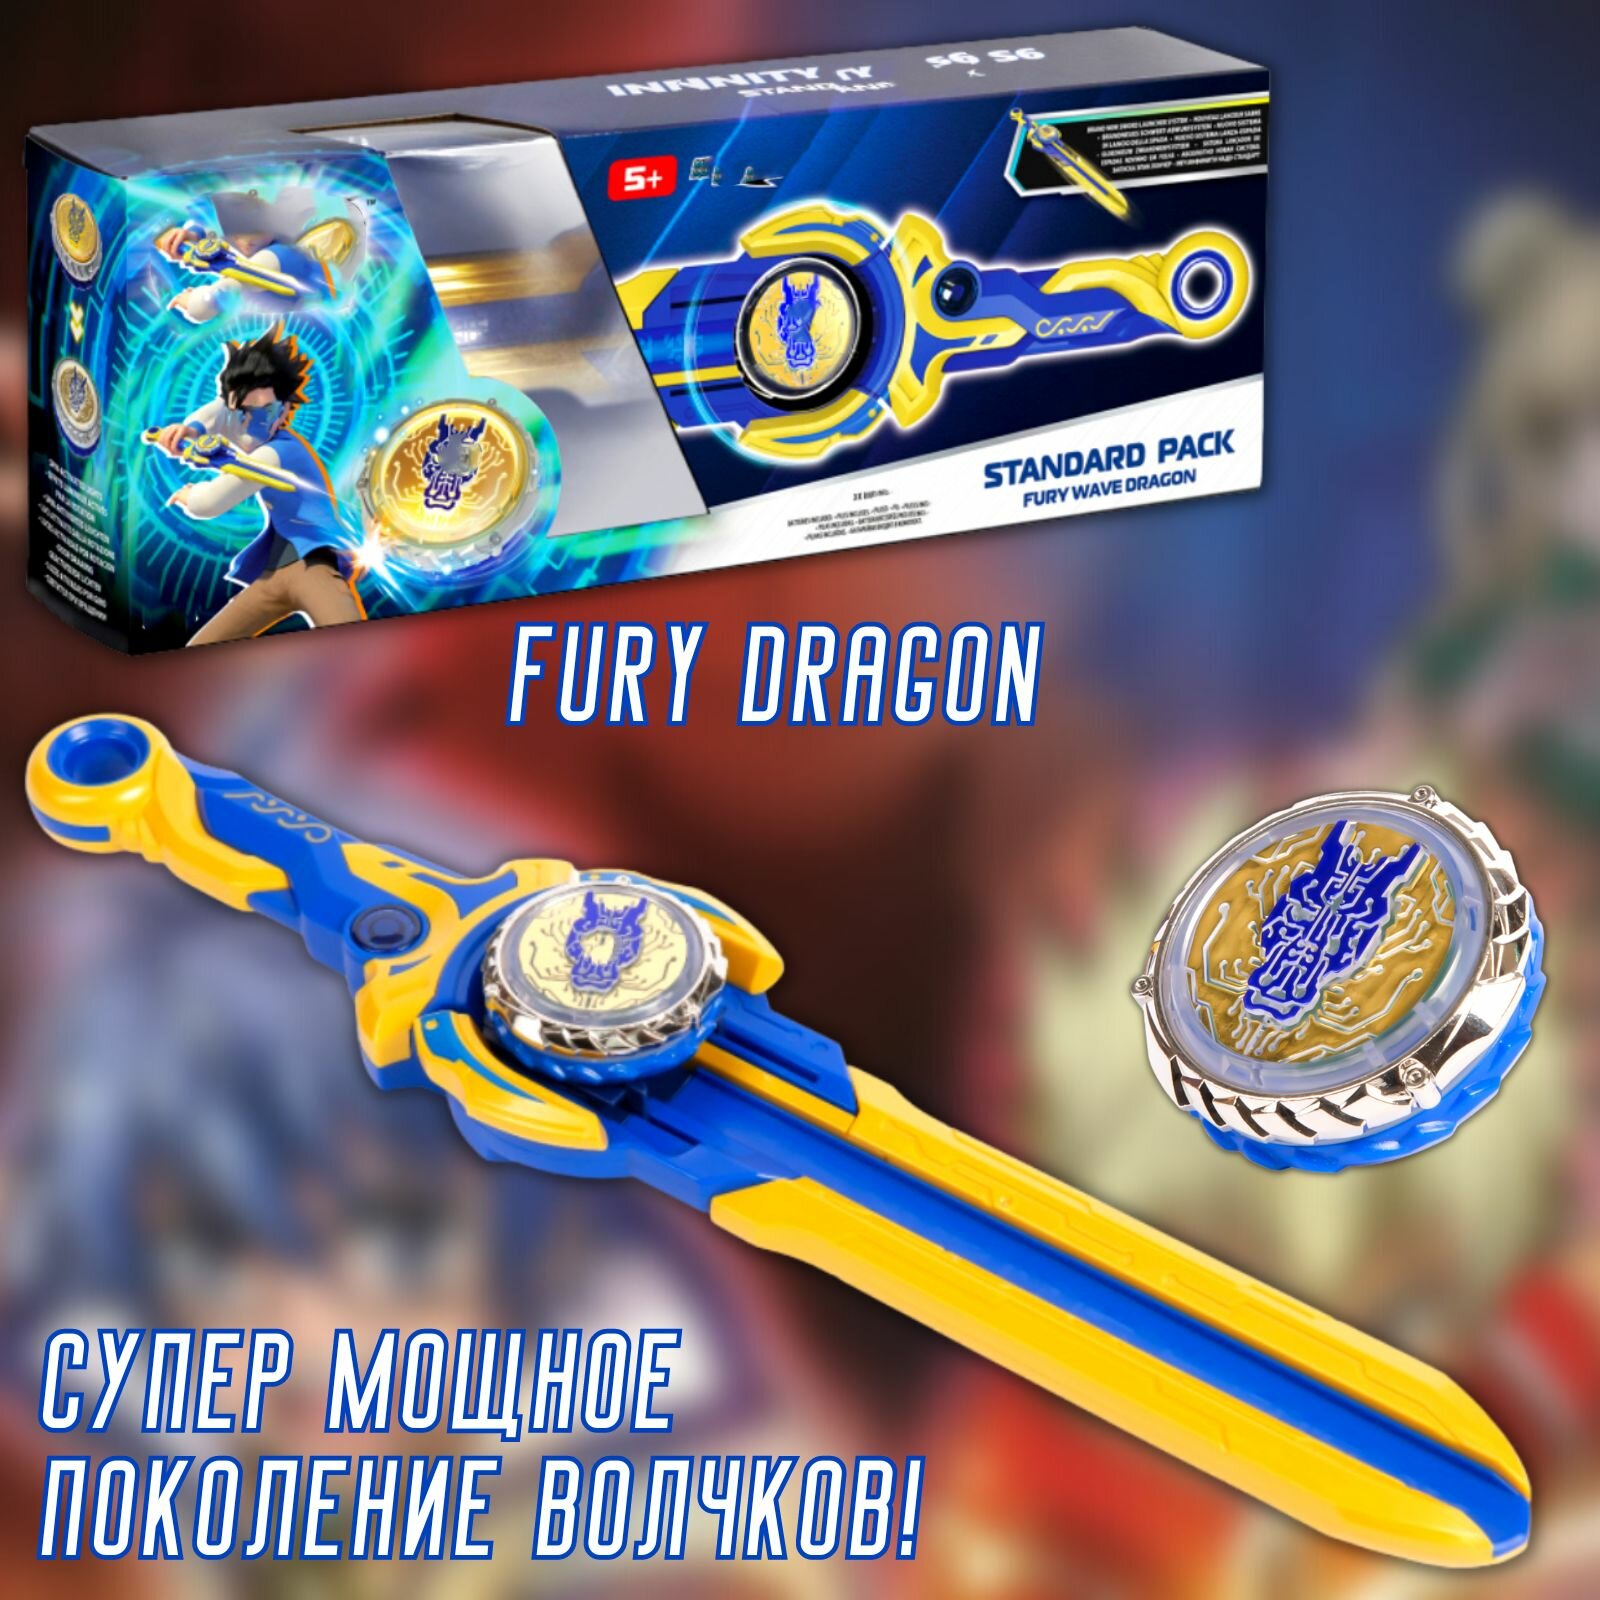 Запускающий меч с волчком "FURY DRAGON" новое поколение / эпик лончер